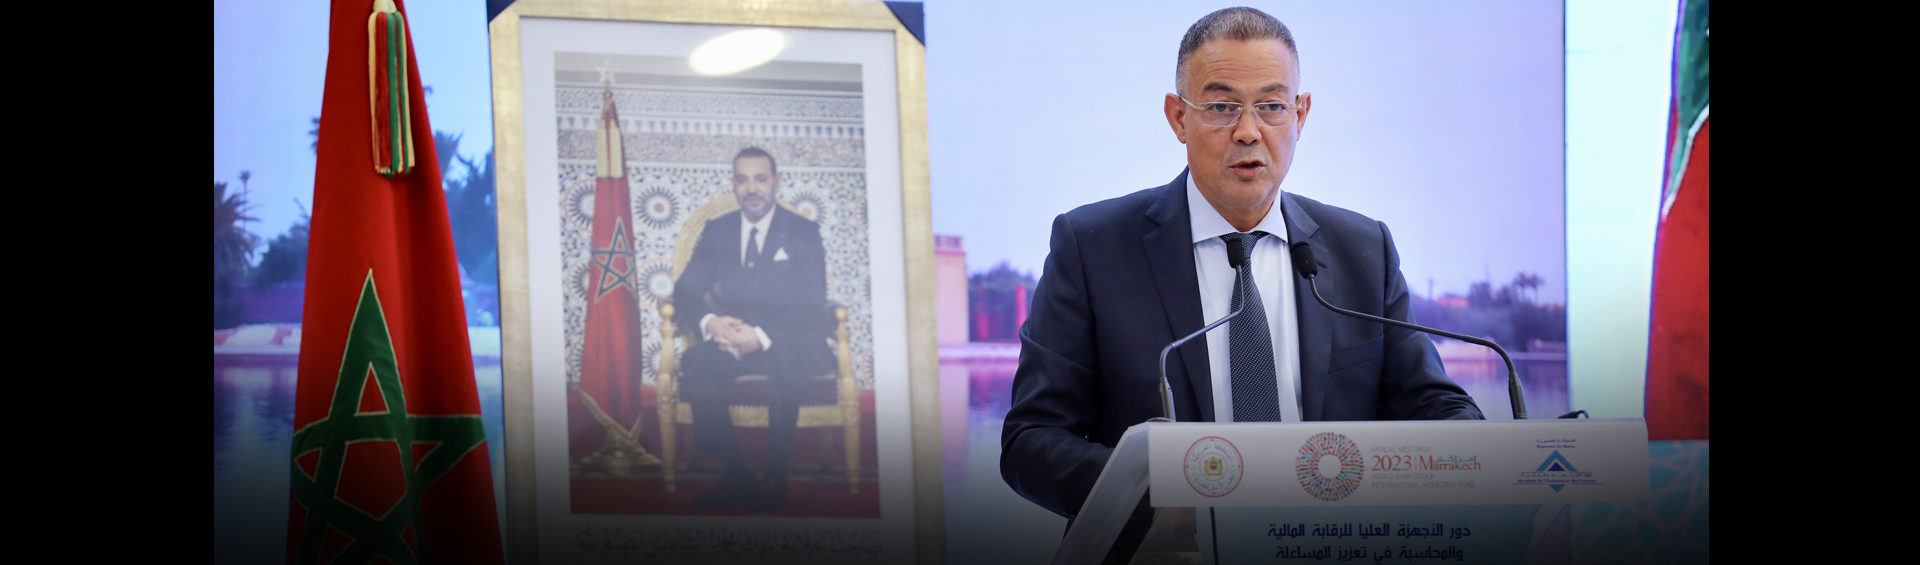 Conferencia internacional en Marrakech sobre el papel de las instituciones superiores de control en el refuerzo de la rendición de cuentas y la transparencia